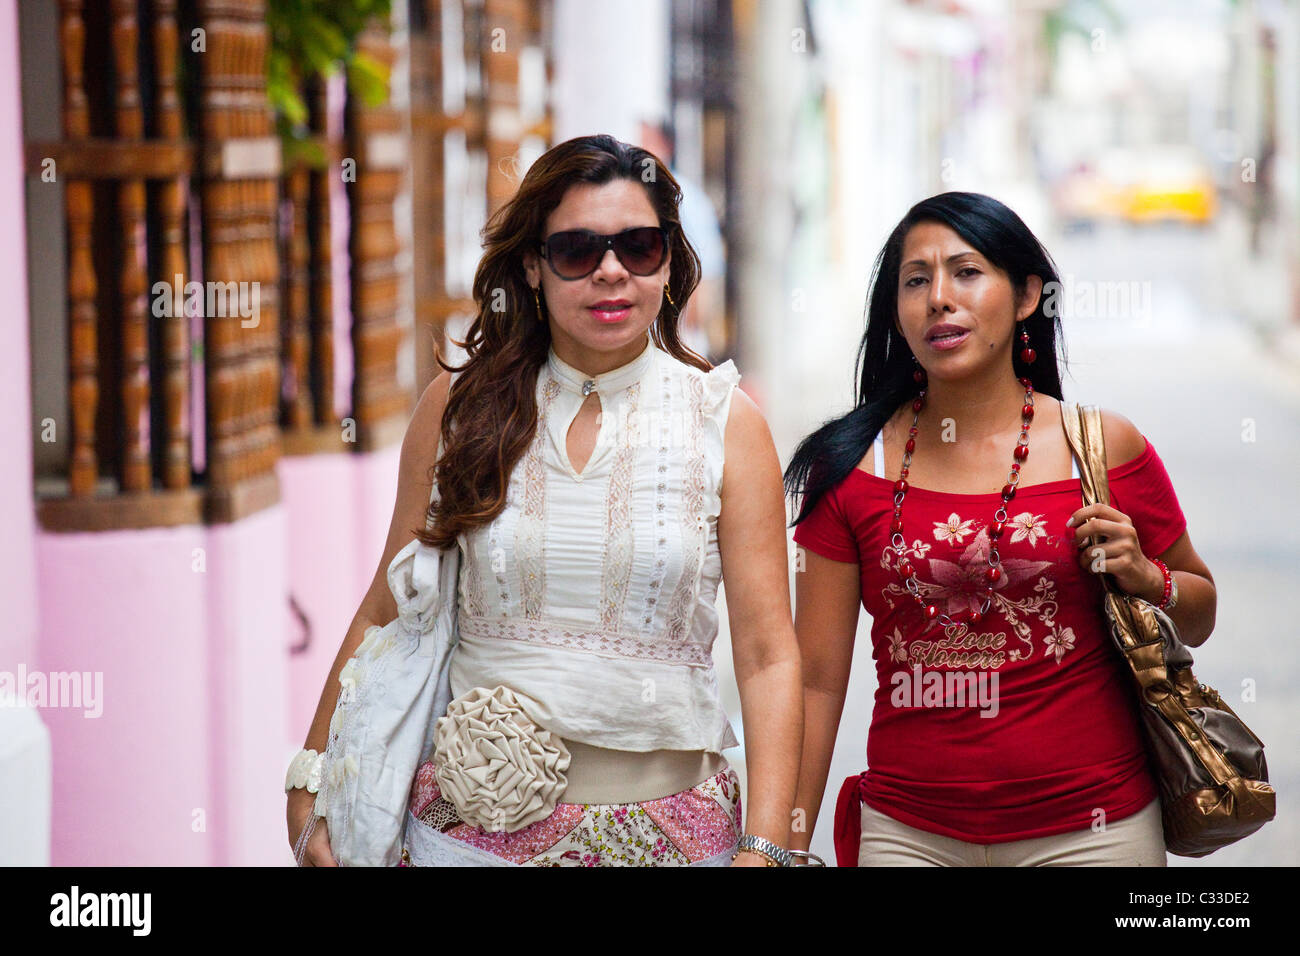 Las mujeres colombianas en el casco antiguo de la ciudad, Cartagena, Colombia Foto de stock